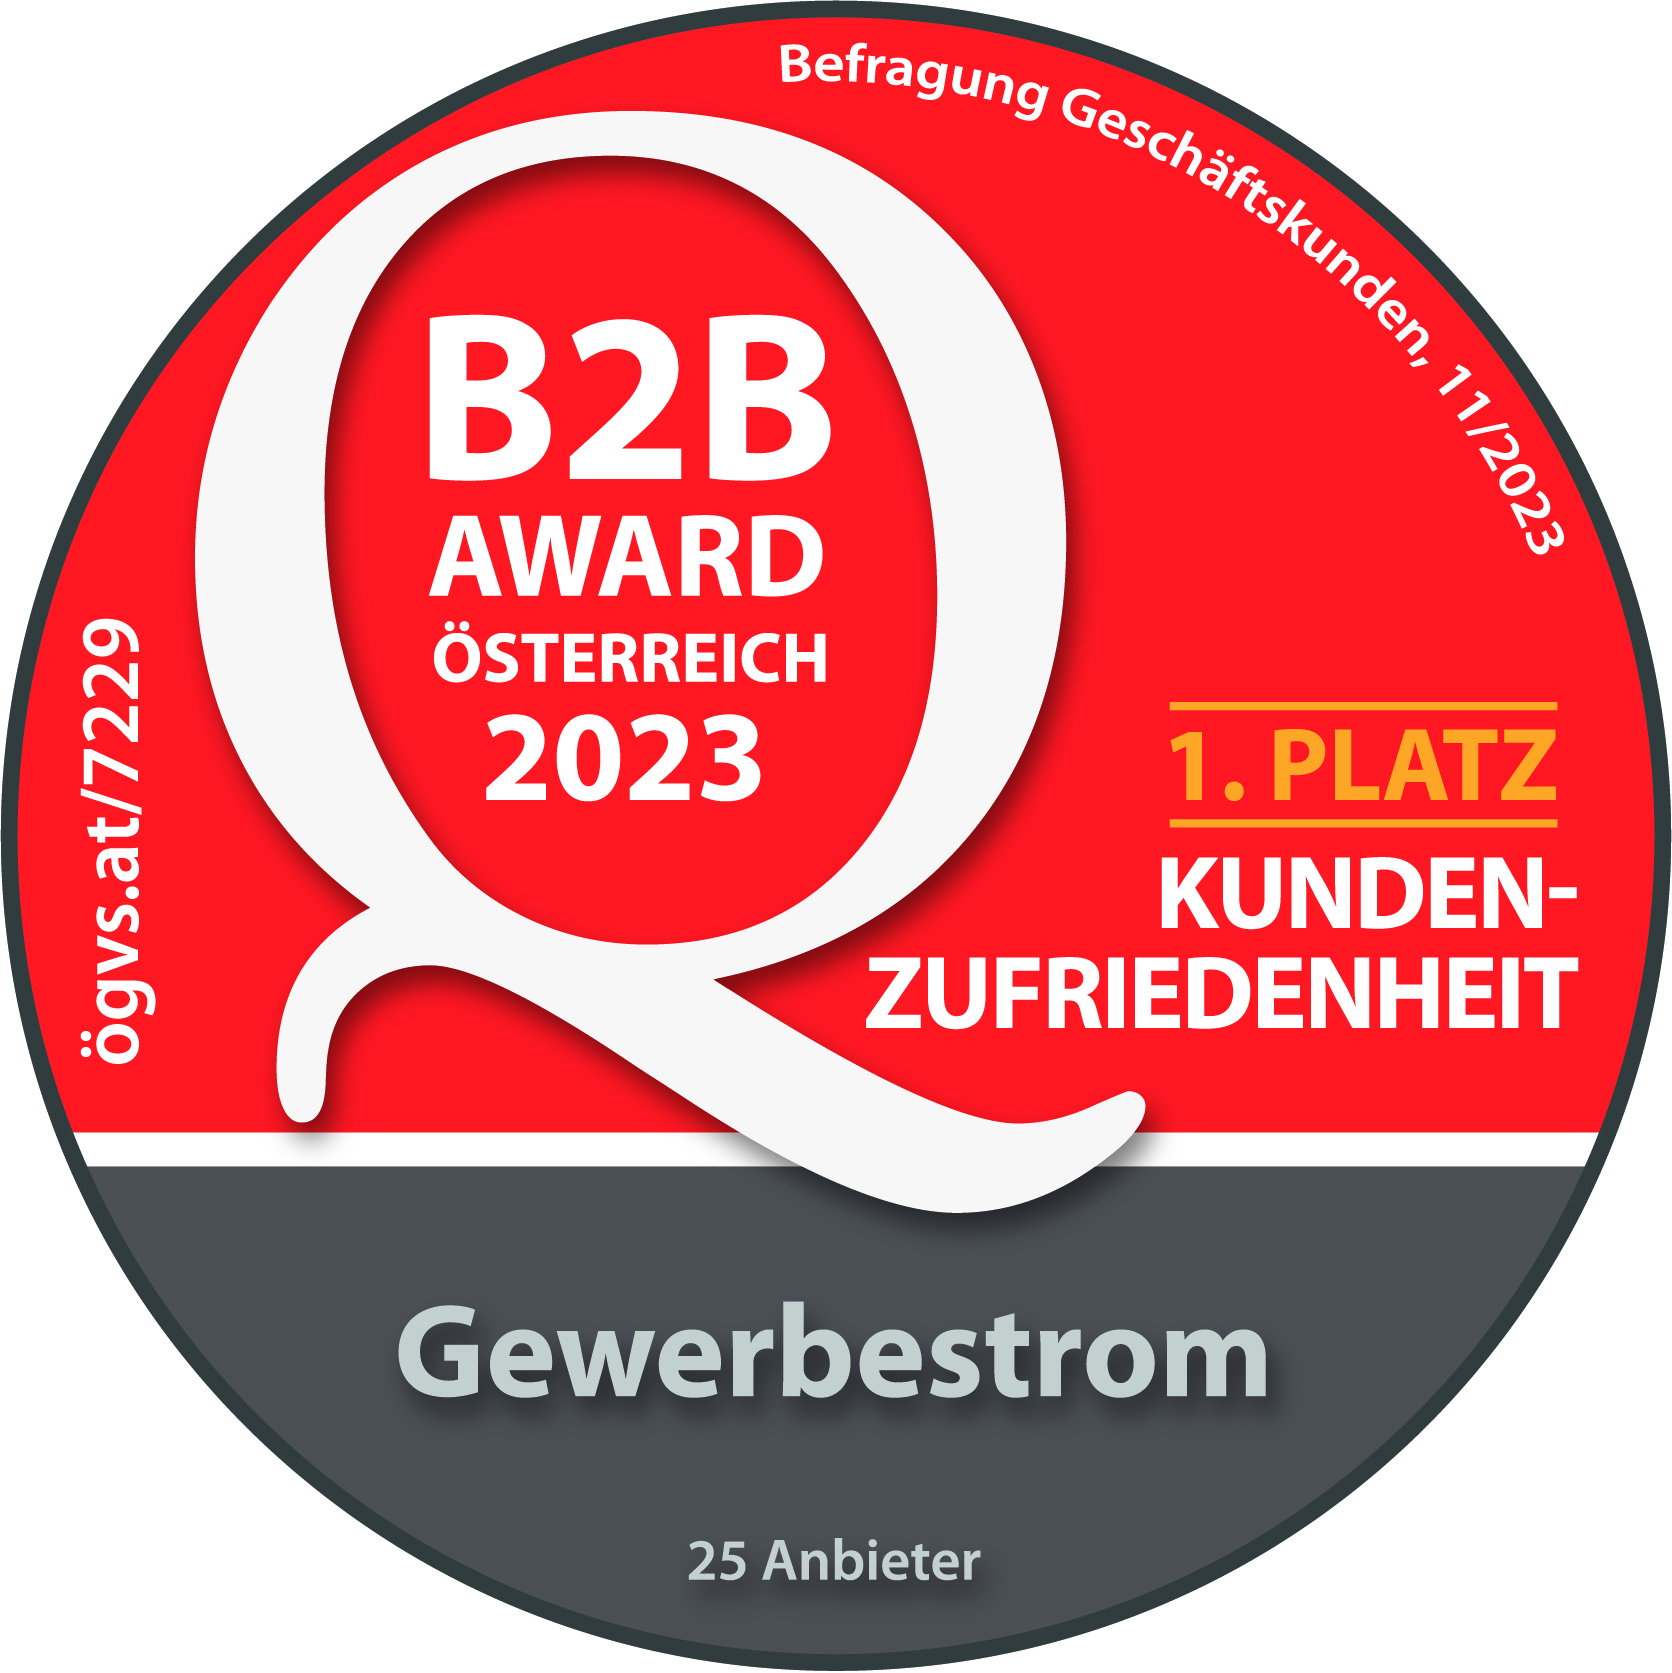 ÖGVS B2B Award Österreich. 1. Platz Kundenzufriedenheit